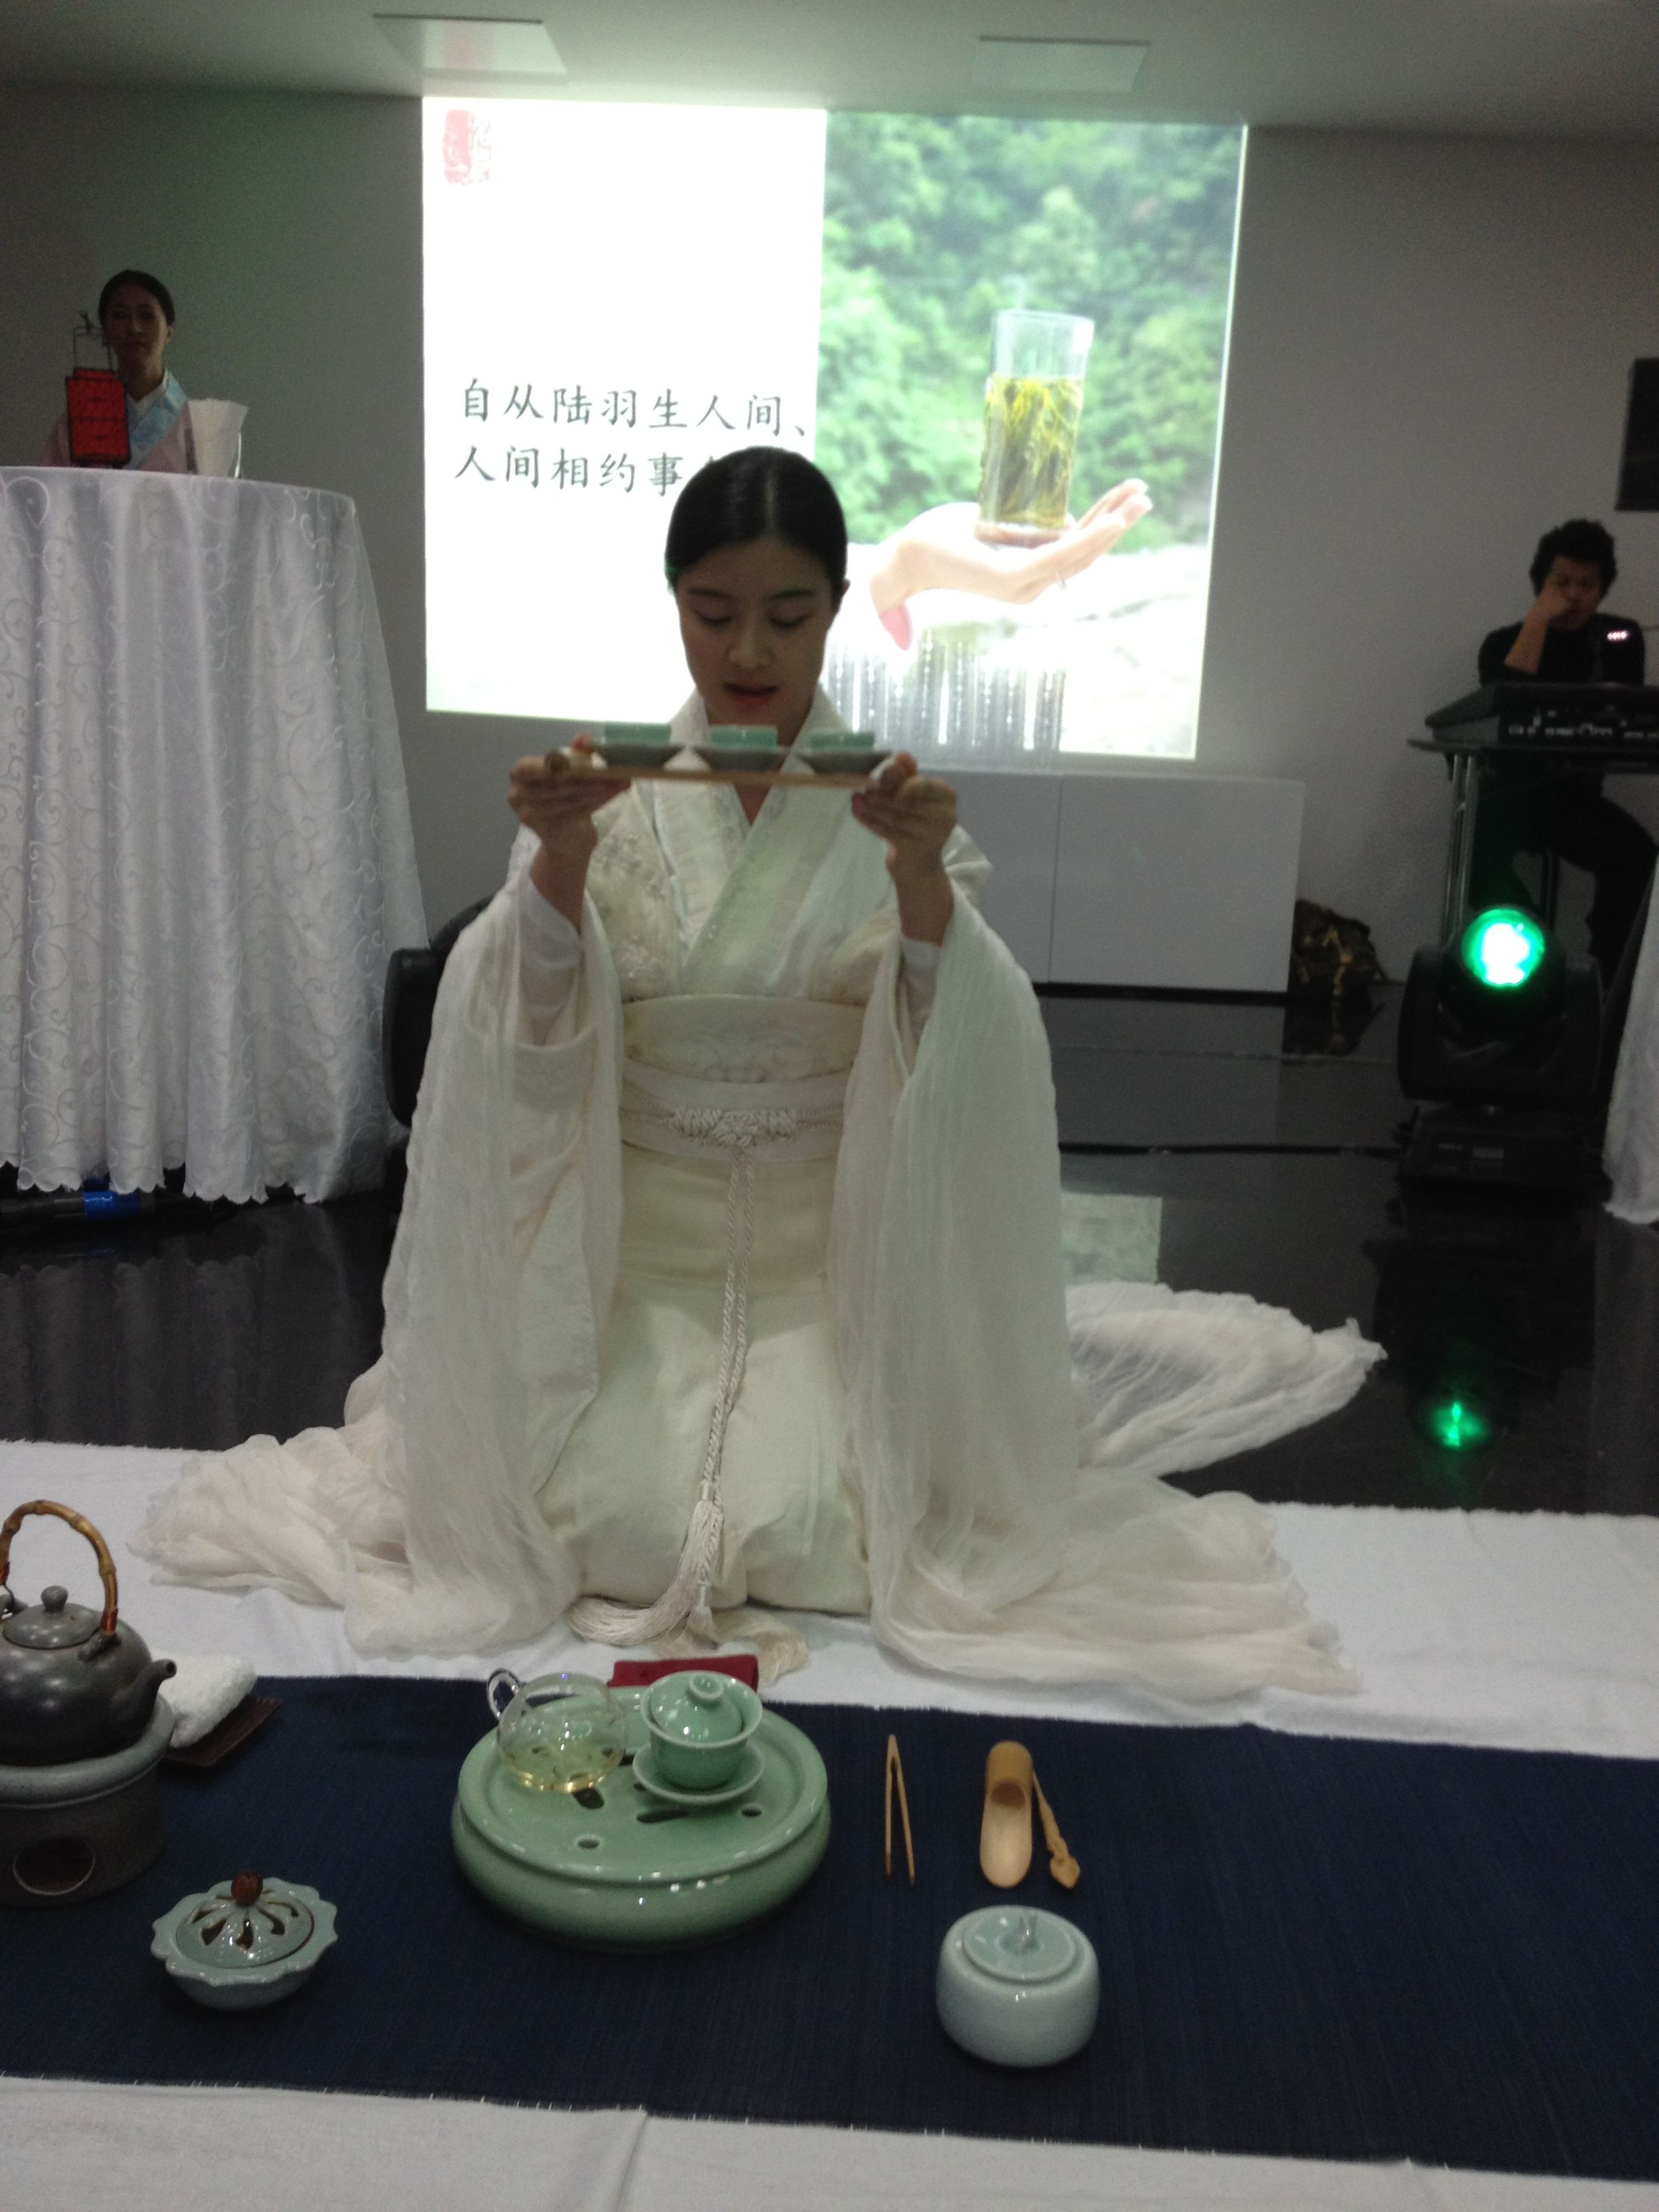 上海万博茶文化キャラの鲍丽丽さんが茶芸を披